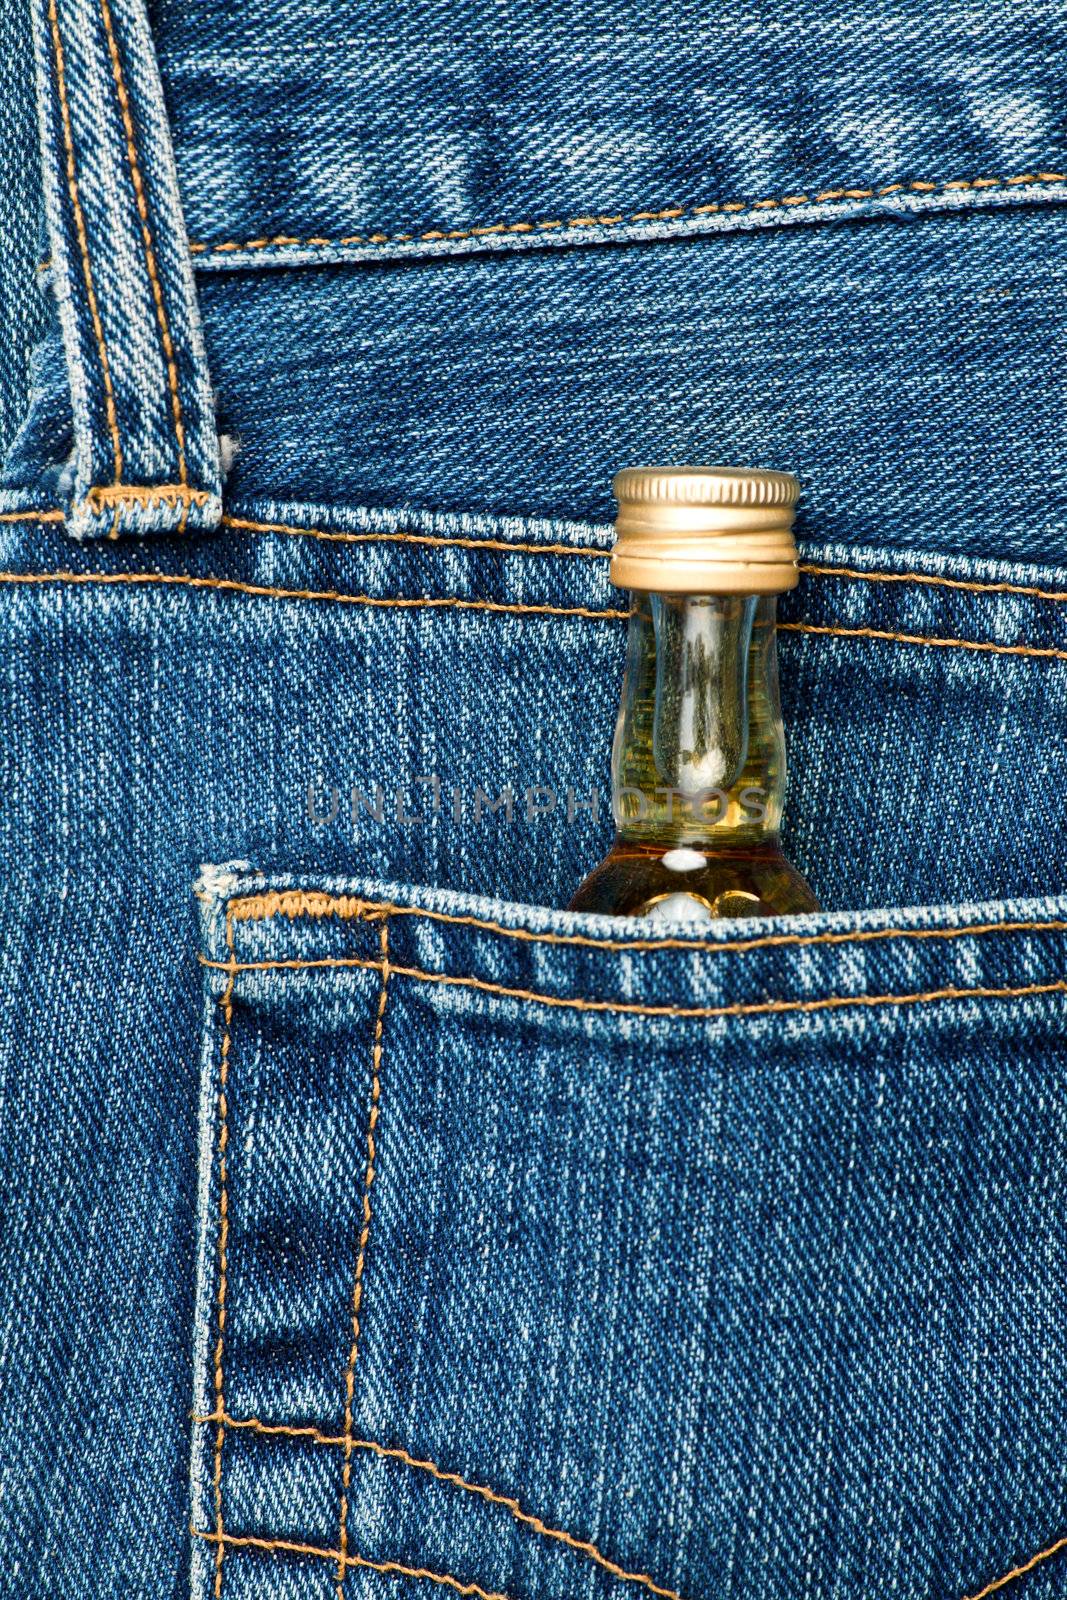 Bottle in a pocket by naumoid